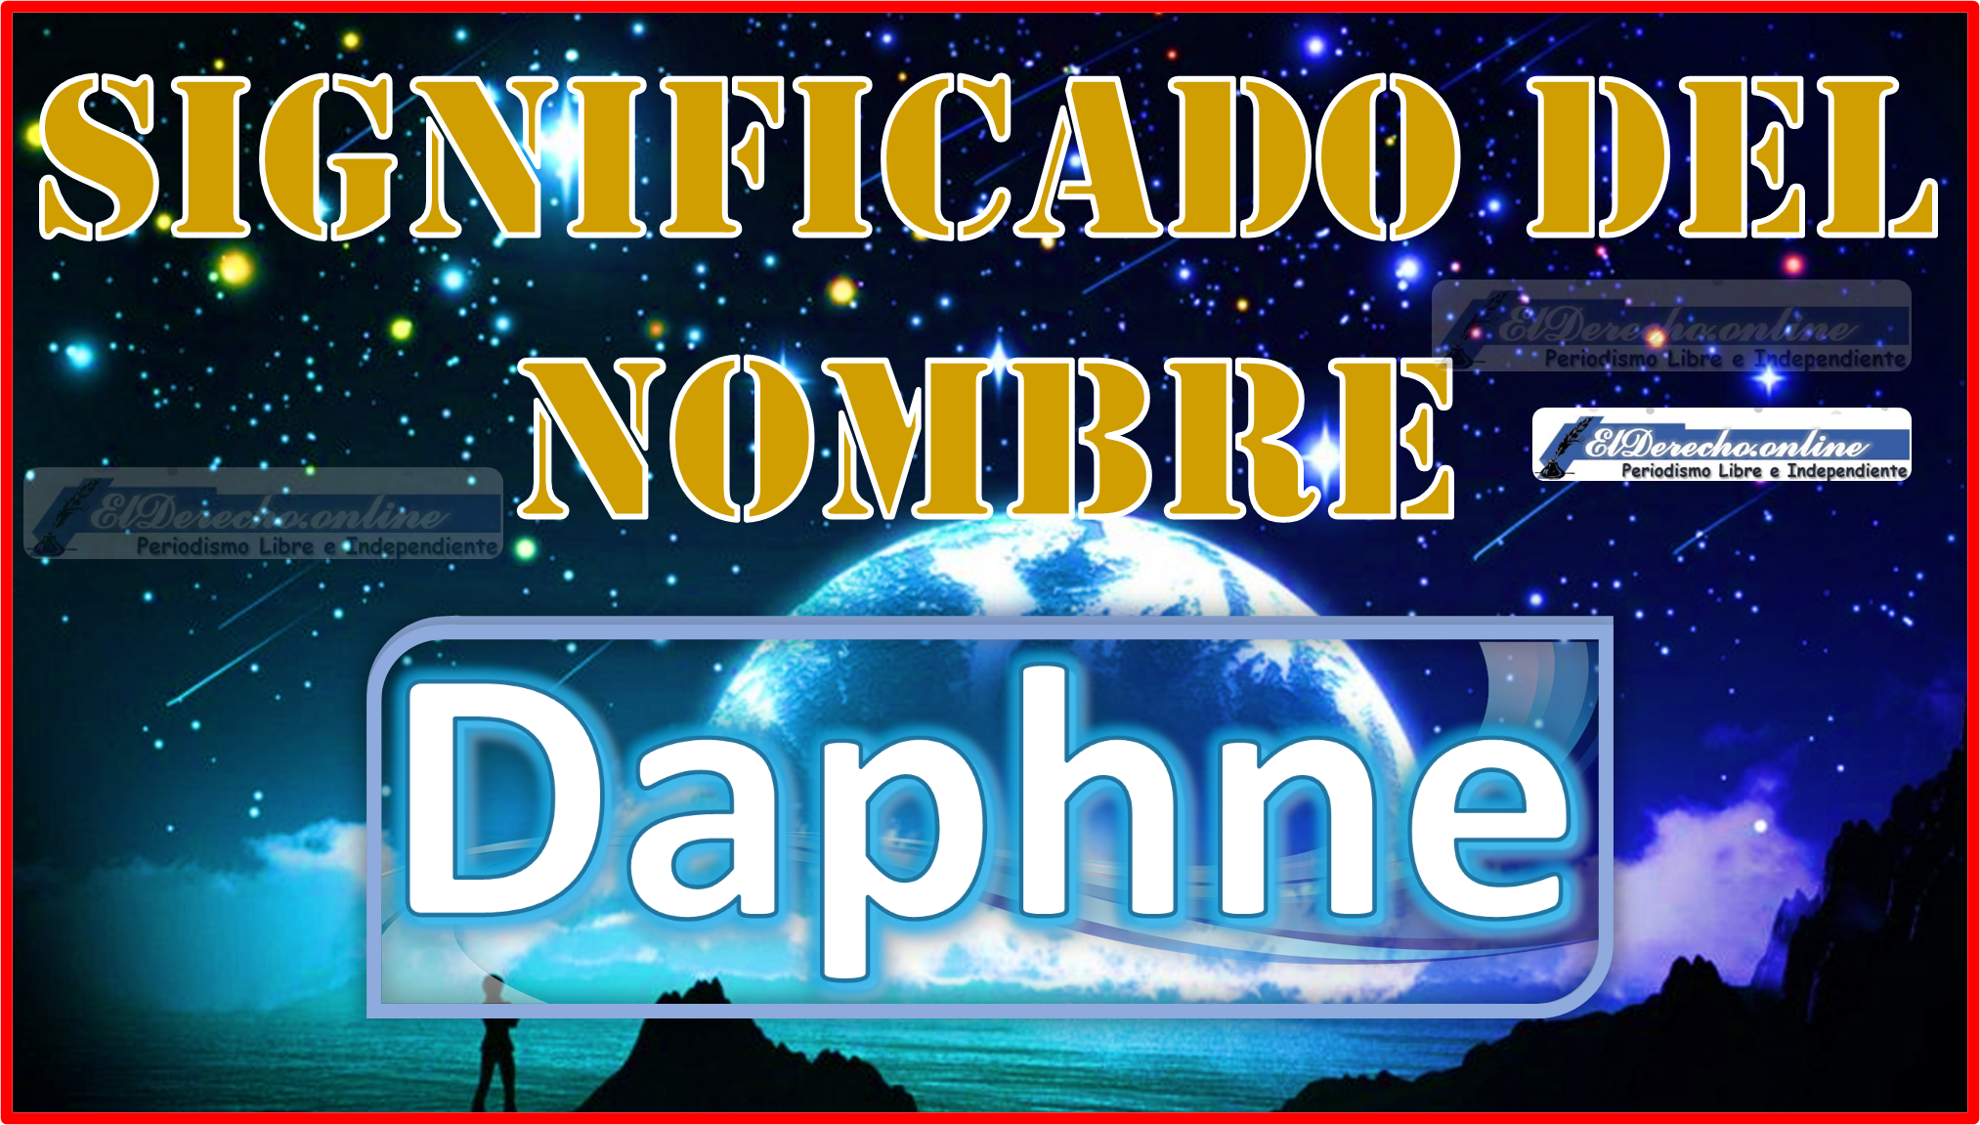 Significado del nombre Daphne, su origen y más